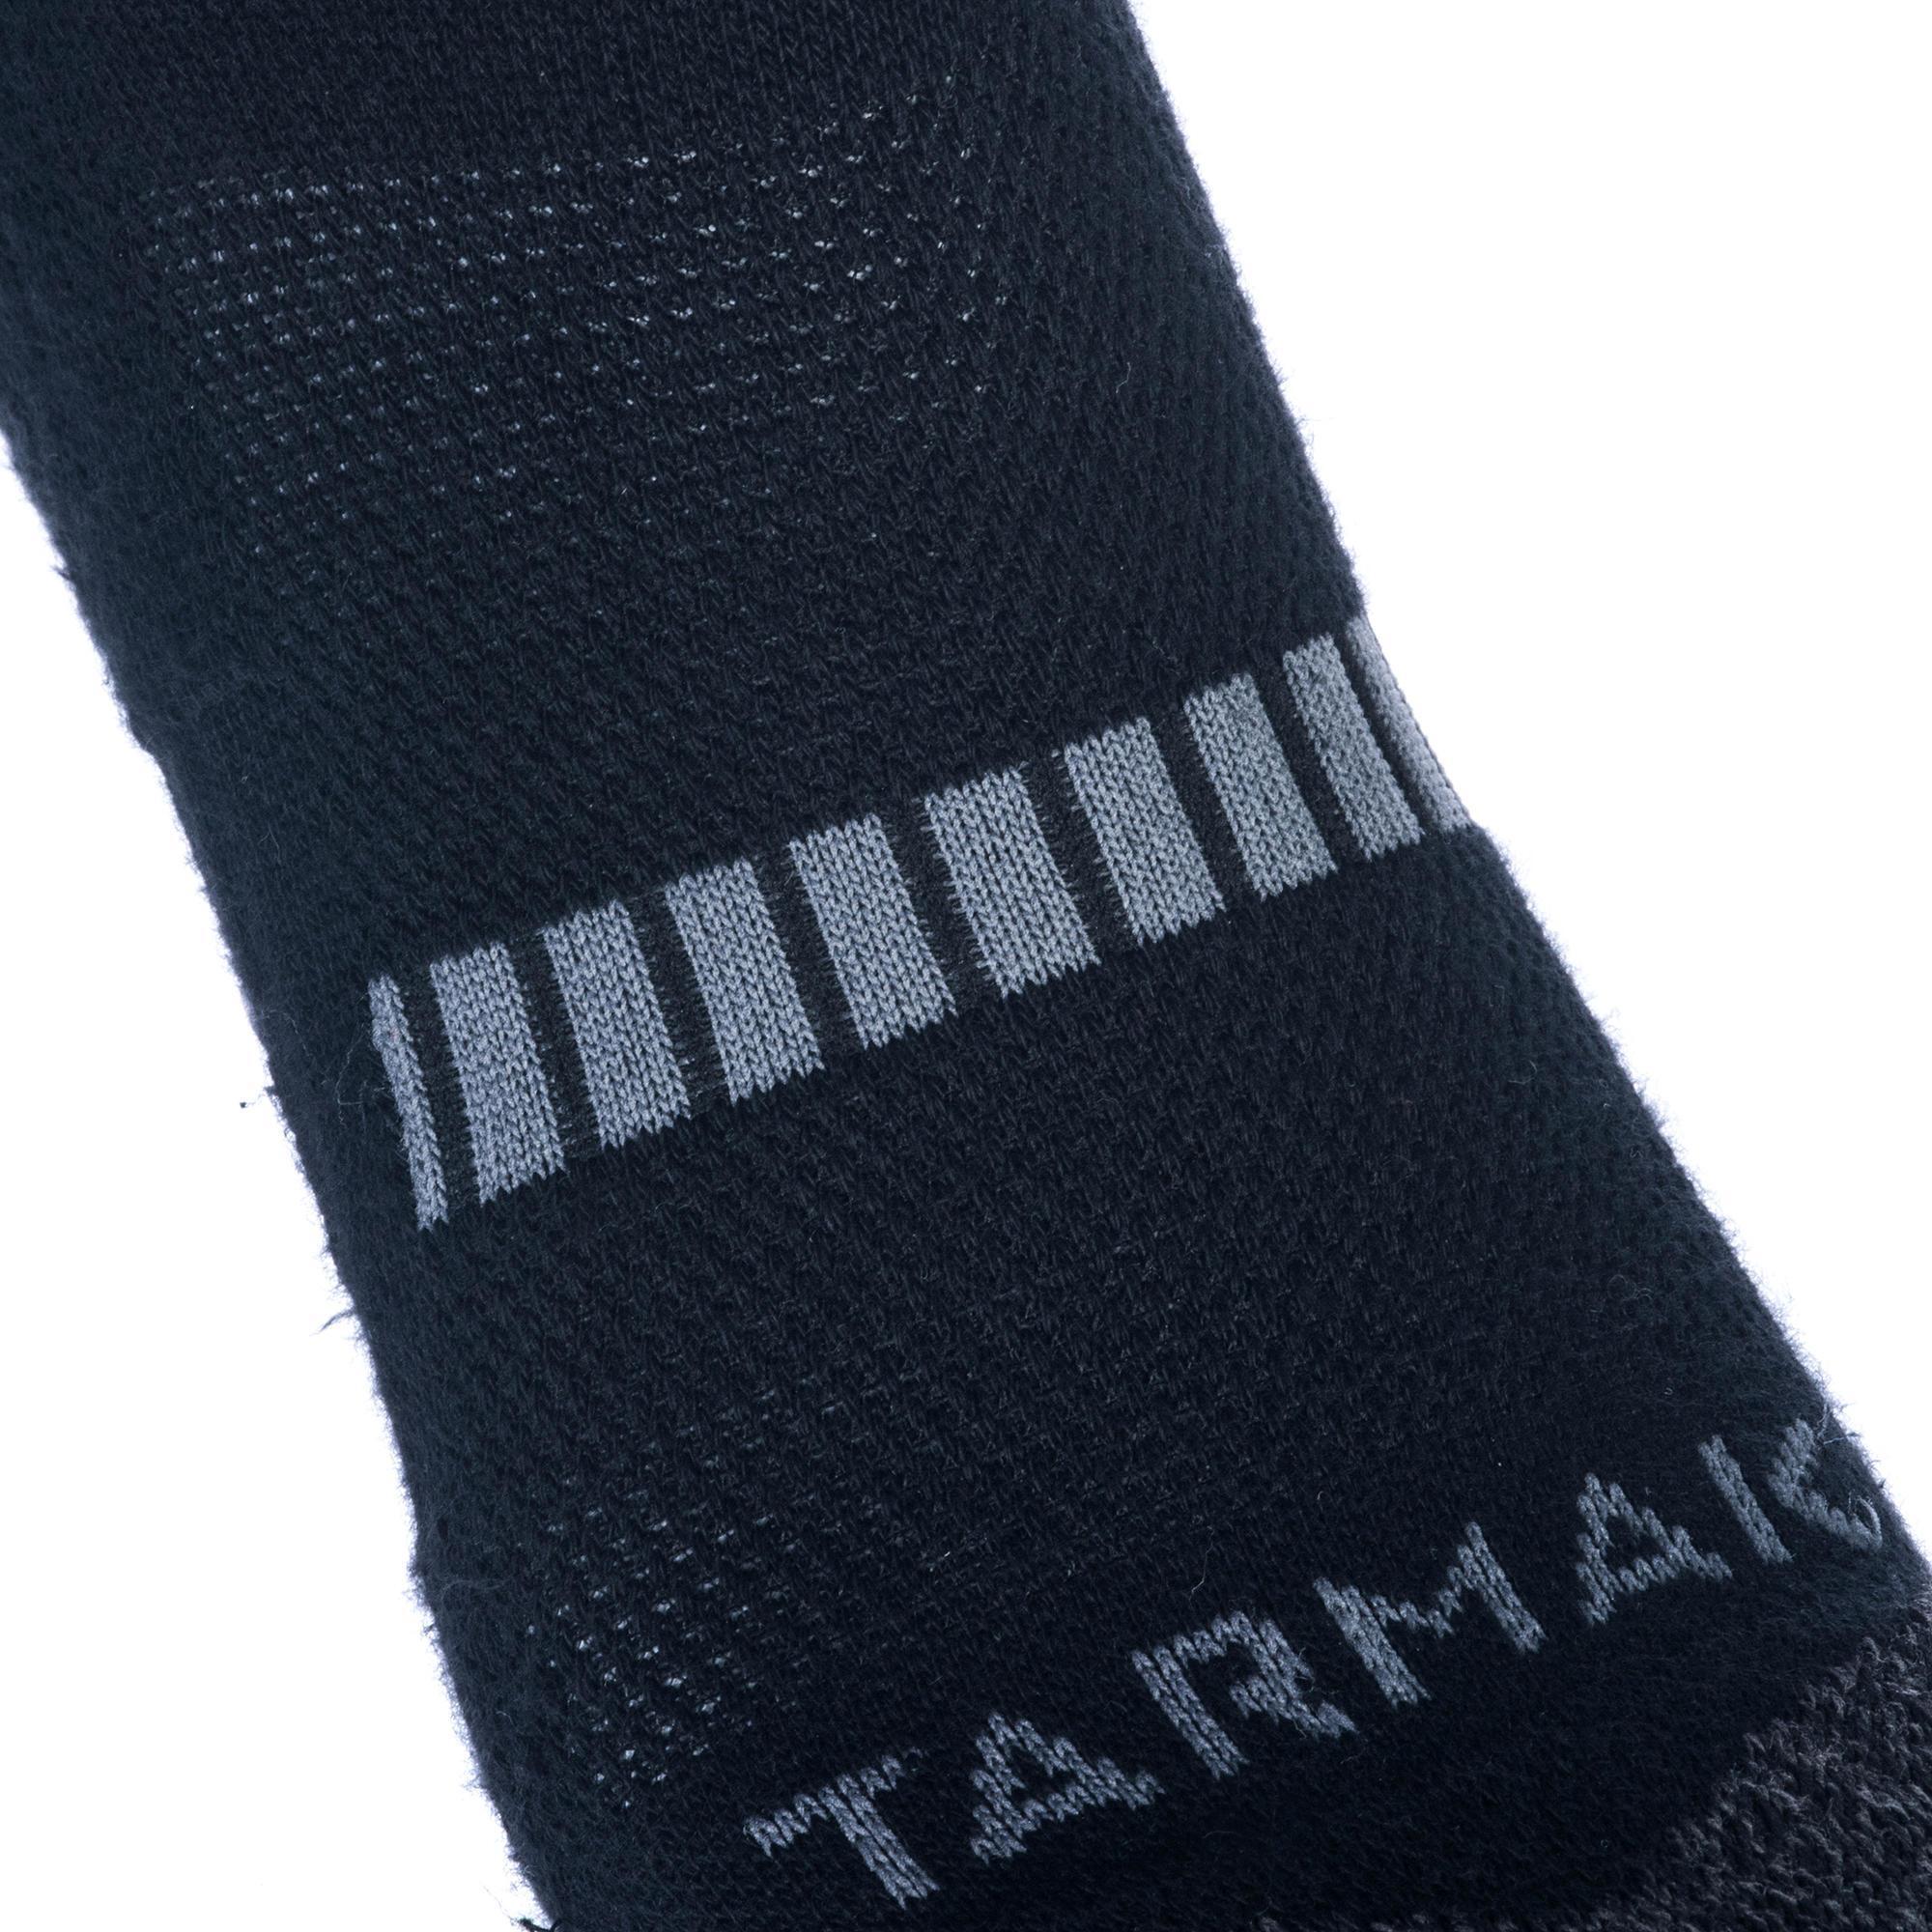 Men's/Women's Mid-Rise Basketball Socks SO500 Twin-Pack - Black 6/8